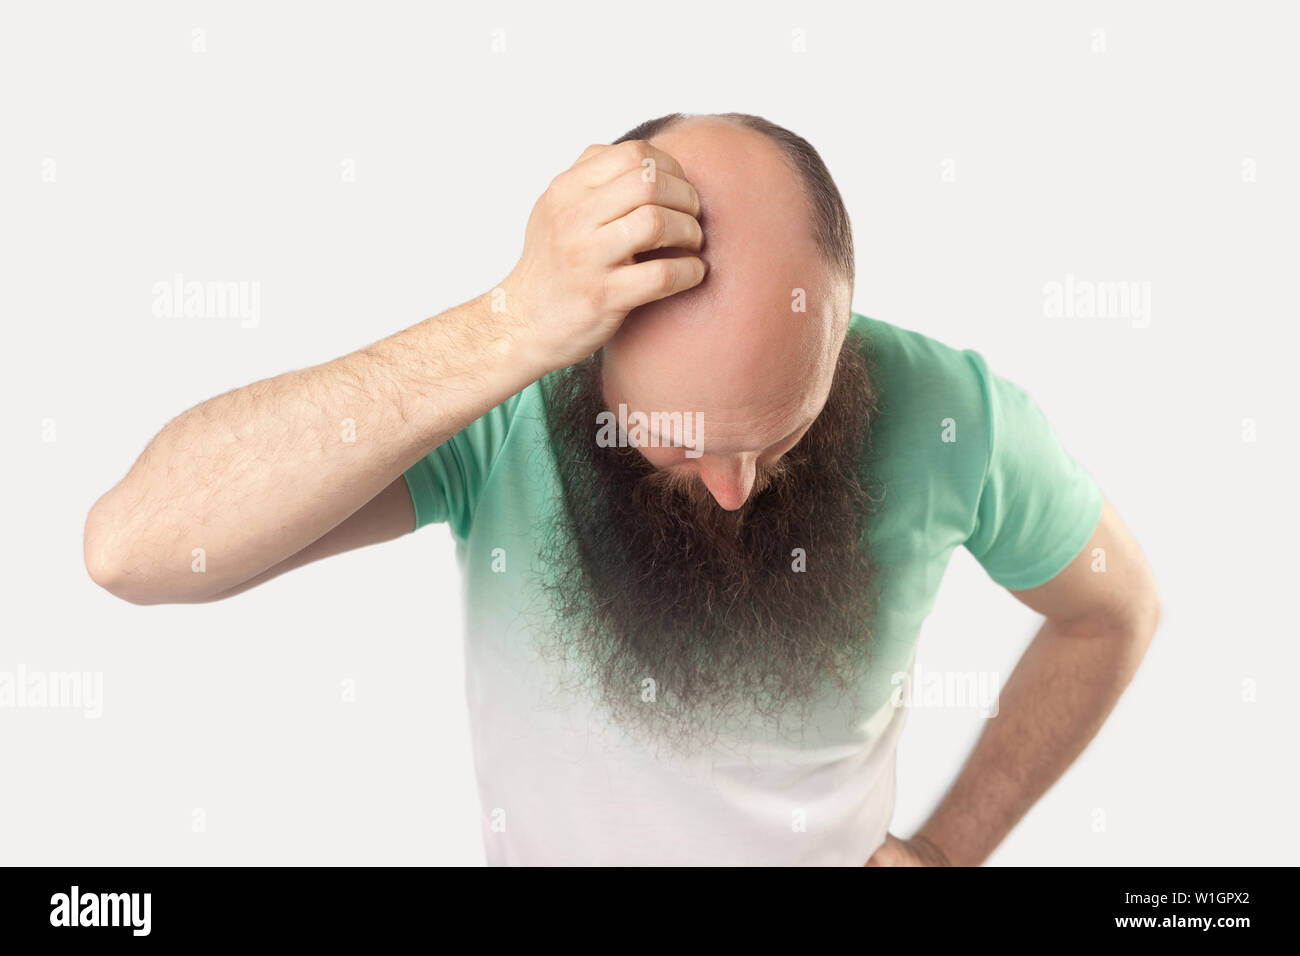 Porträt der glatzköpfige Mann mittleren Alters mit langen Bart in hellem Grün t-shirt stehen und zeigt seine Kahlheit auf seinem Kopf. indoor Studio shot, auf isolierte Stockfoto